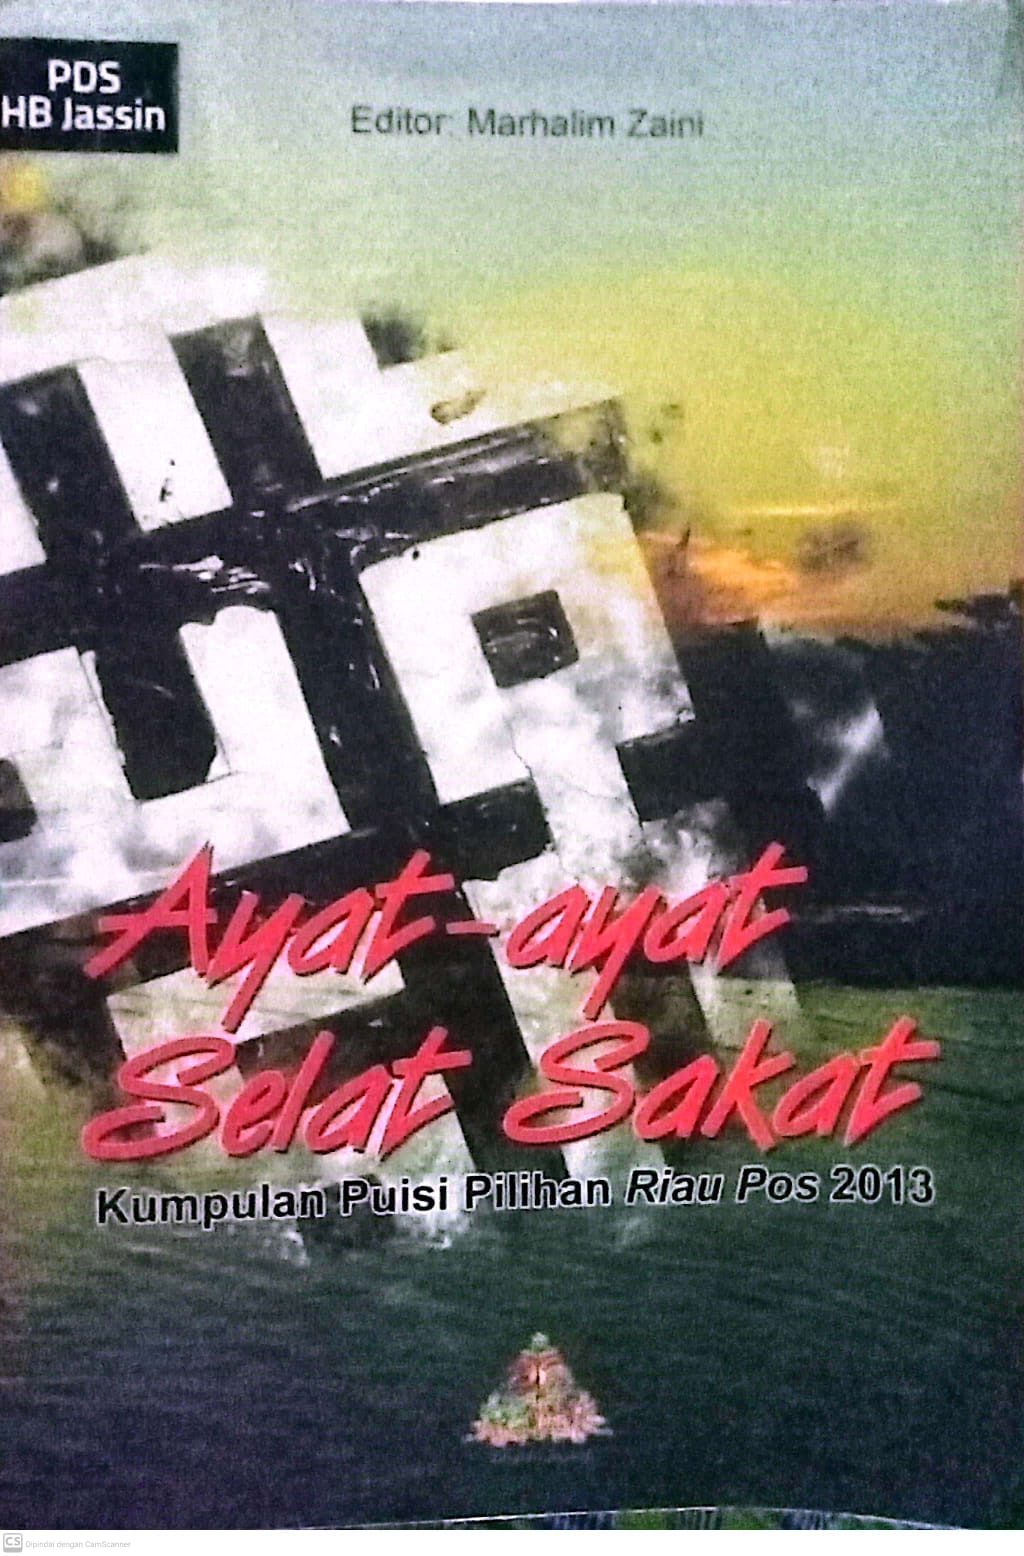 Ayat-ayat selat sakat :  Kumpulan puisi pilihan Riau pos 2013